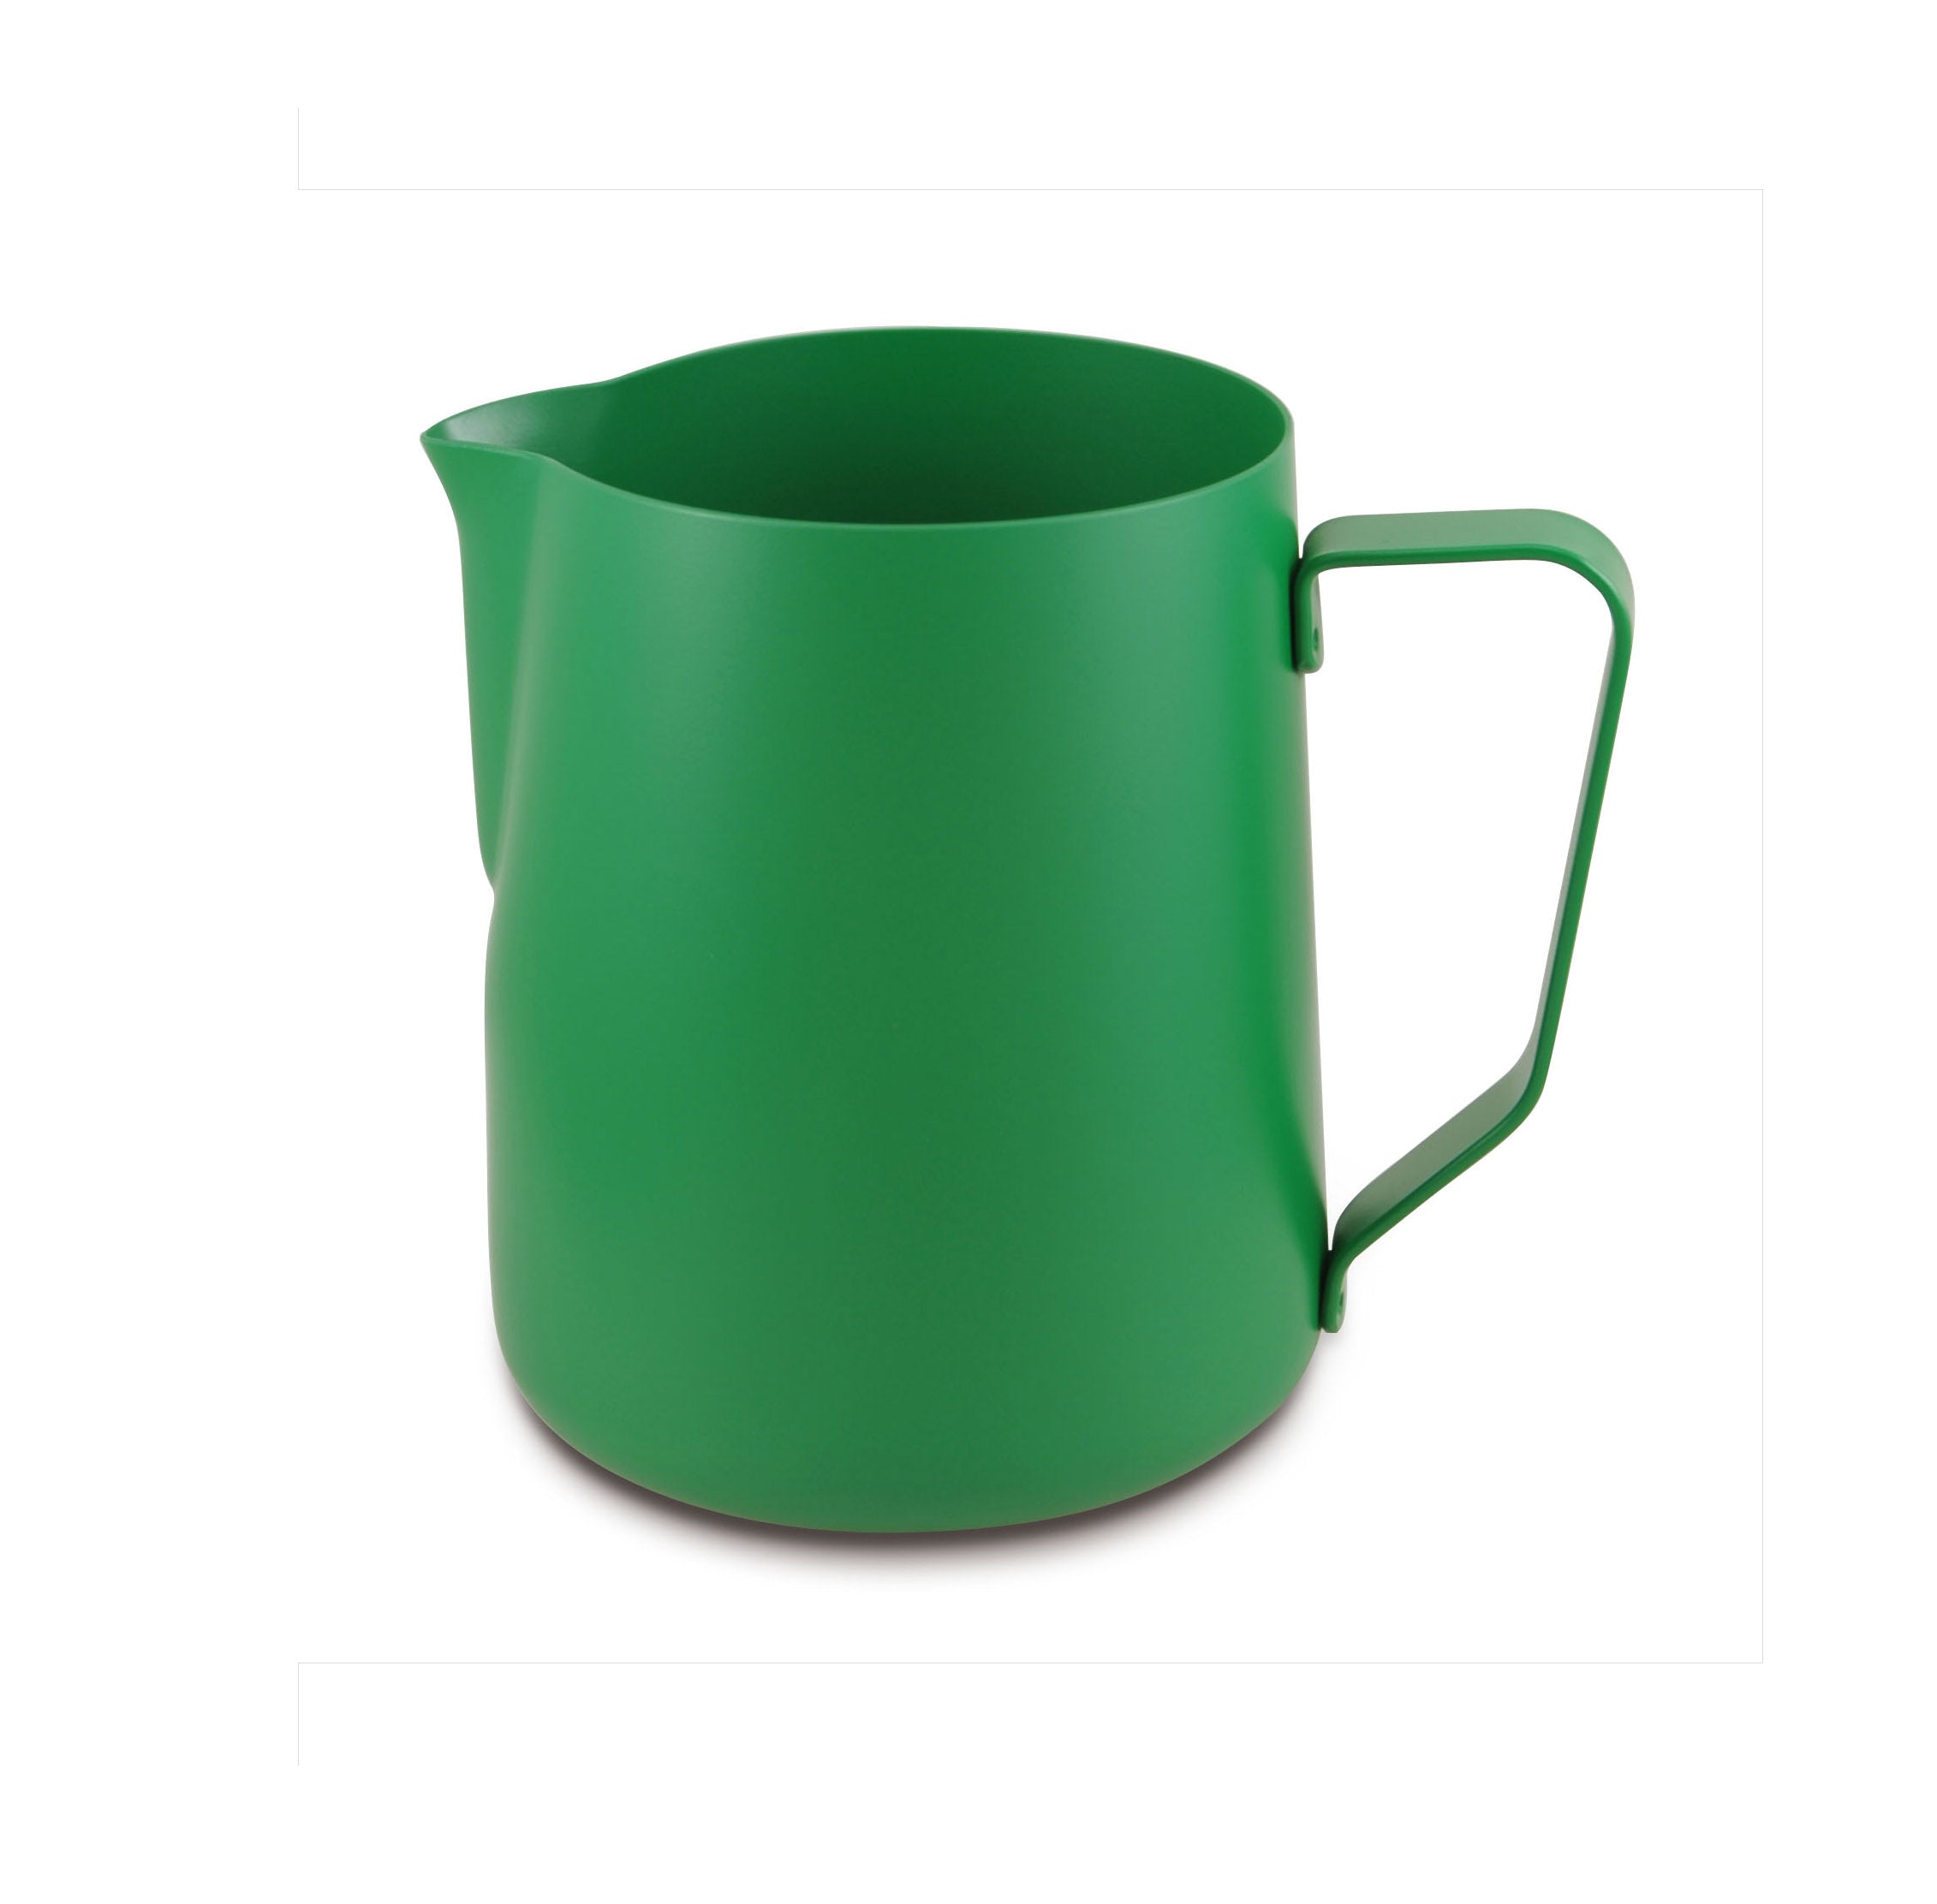 Lattiera per cappuccino in acciaio inox | Colore verde | Capacità 360 ml